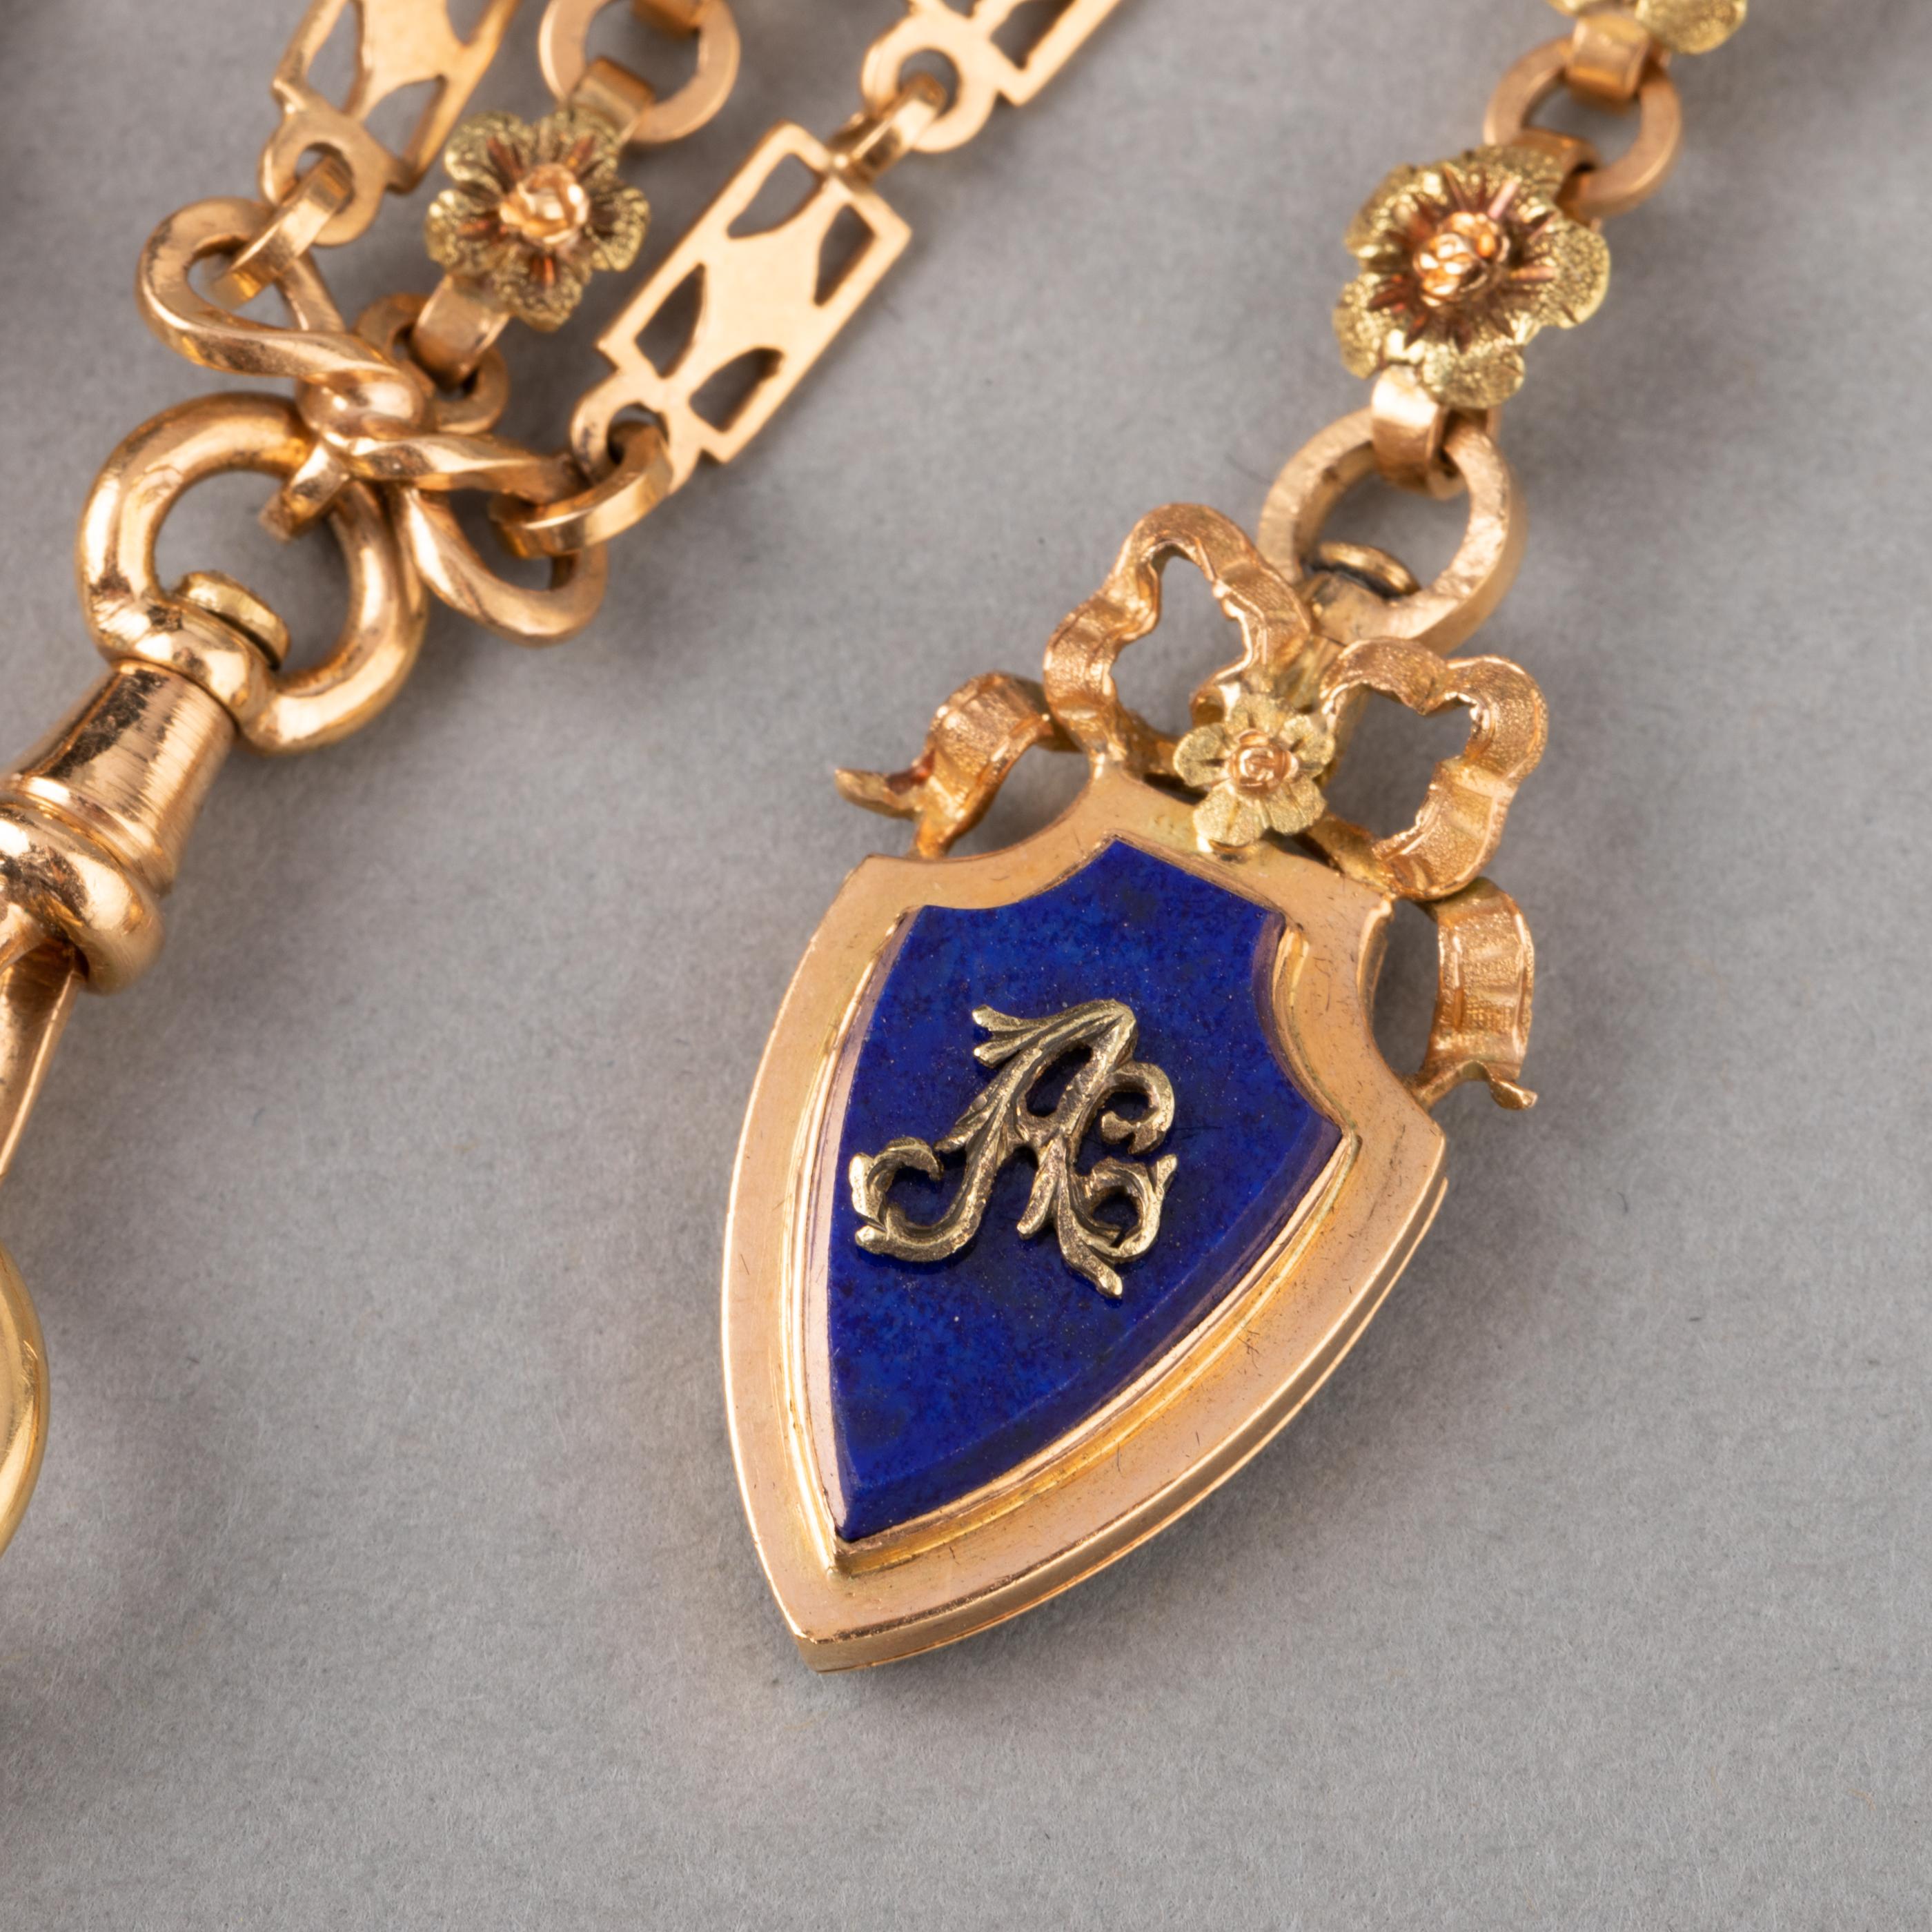 Gold and Lapis Lazuli Antique Châtelaine Brooch by Le Roy & Fils Paris 2